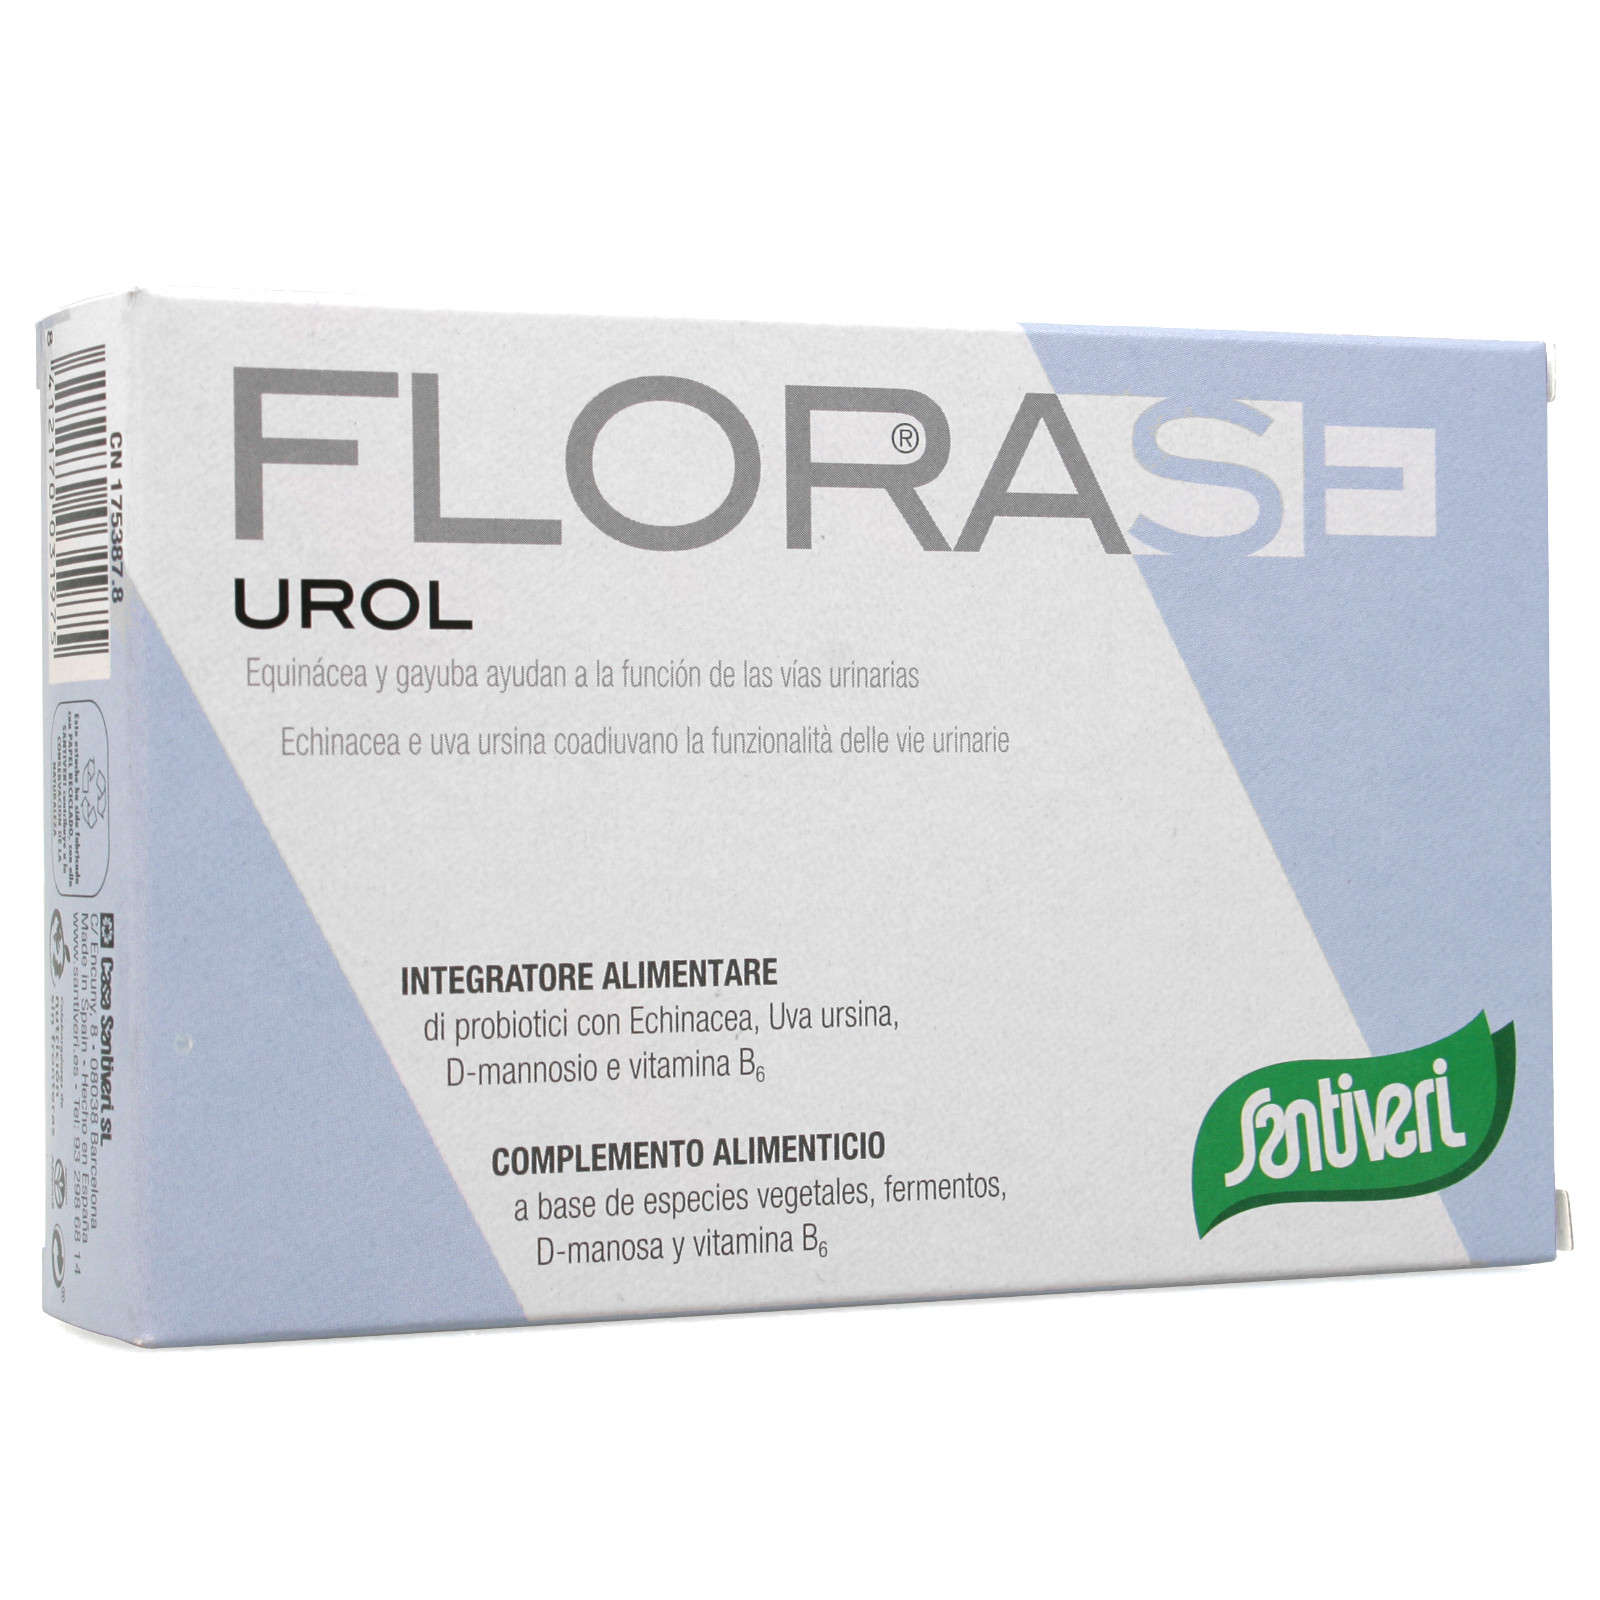 Florase - Urol 